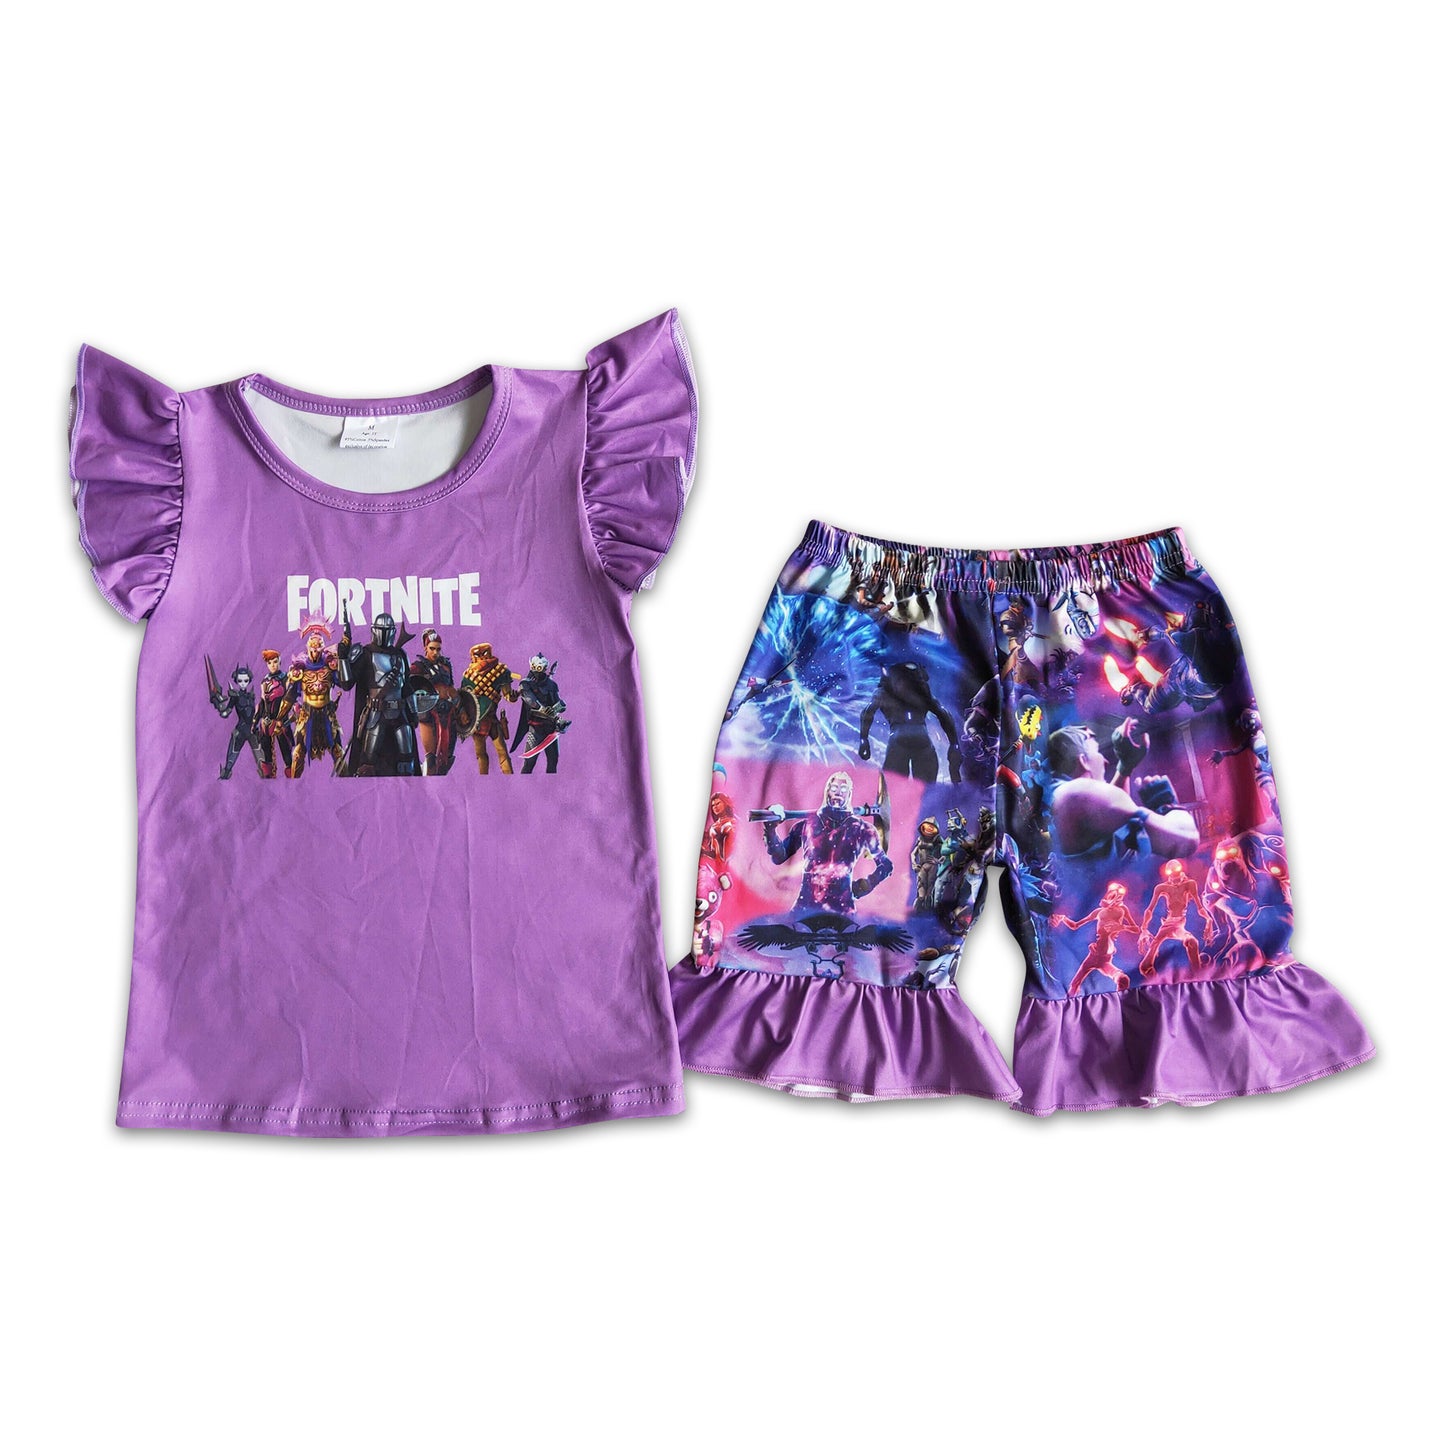 Purple shirt ruffle game shorts girls clothing